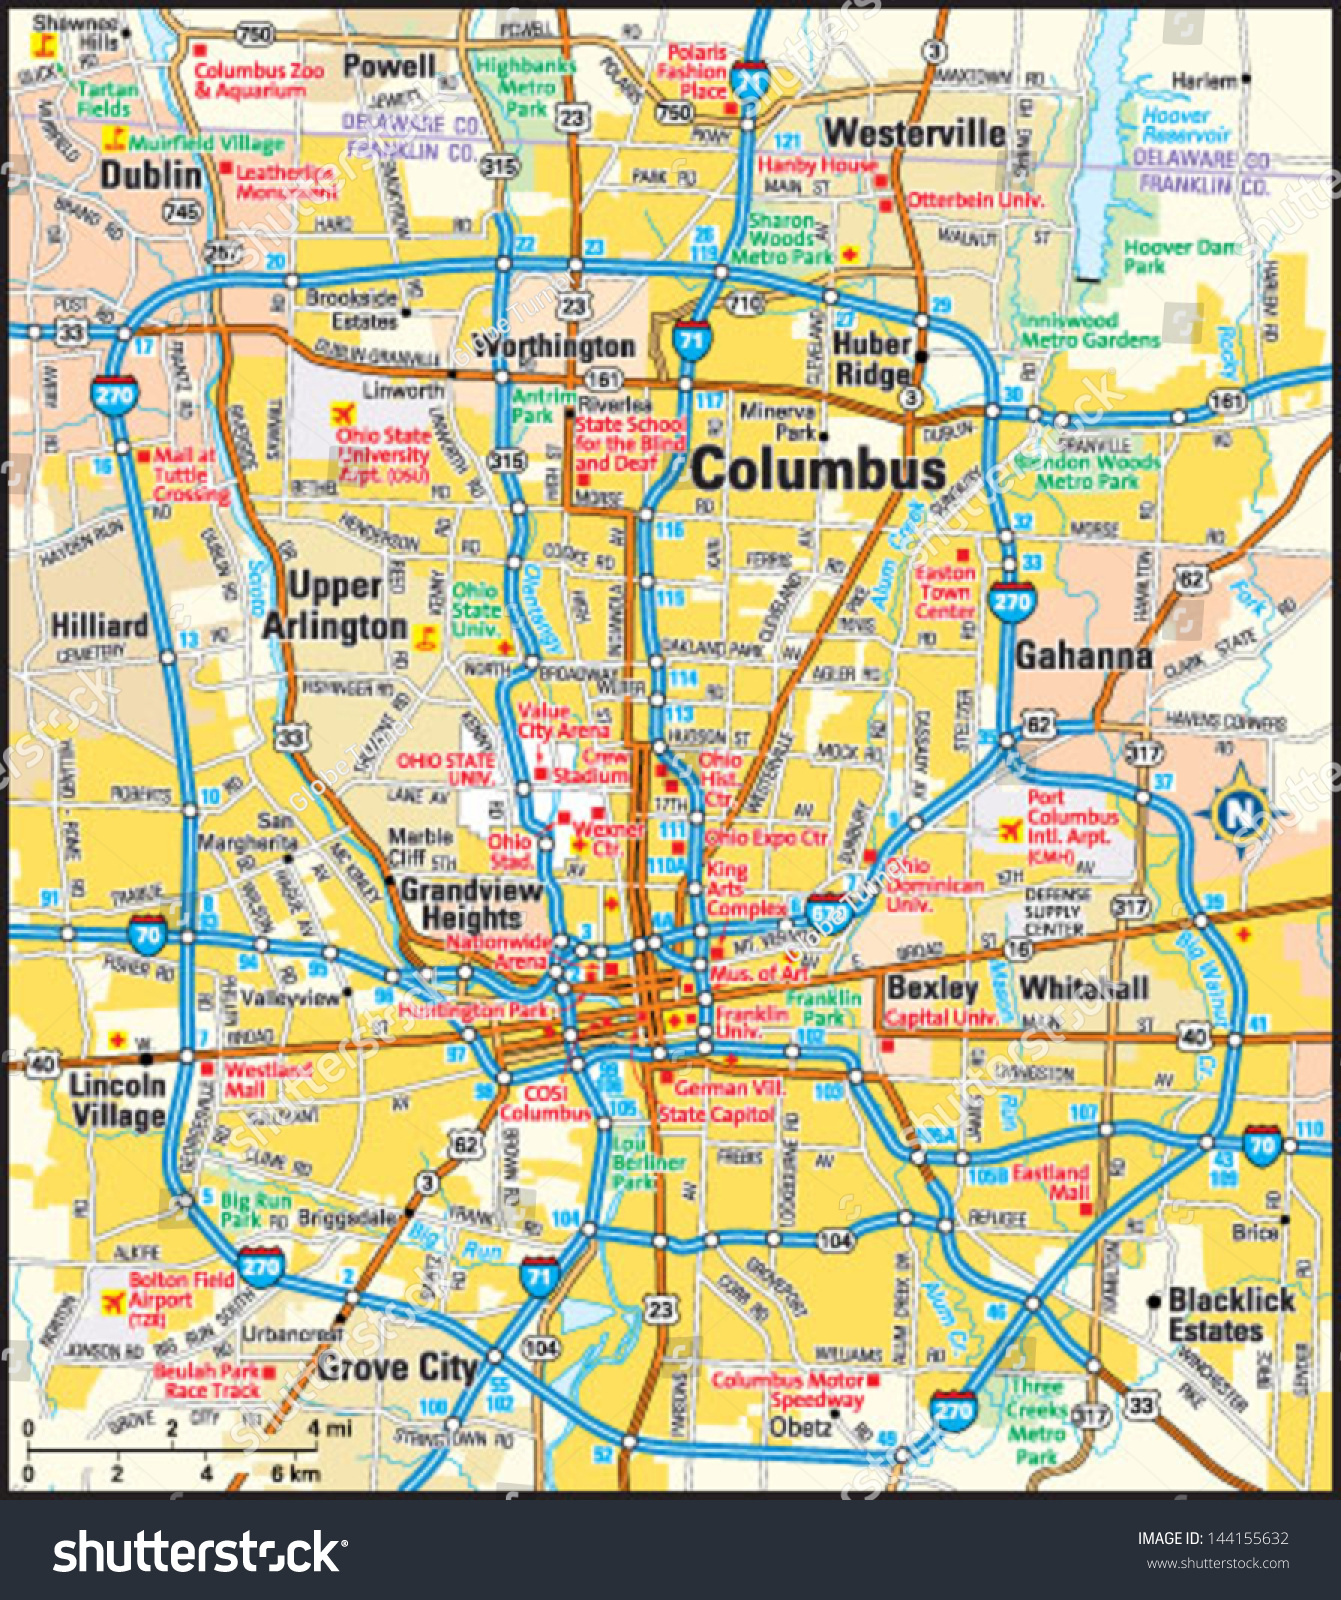 Columbus, Ohio Area Map Stock Vector Illustration 144155632 : Shutterstock